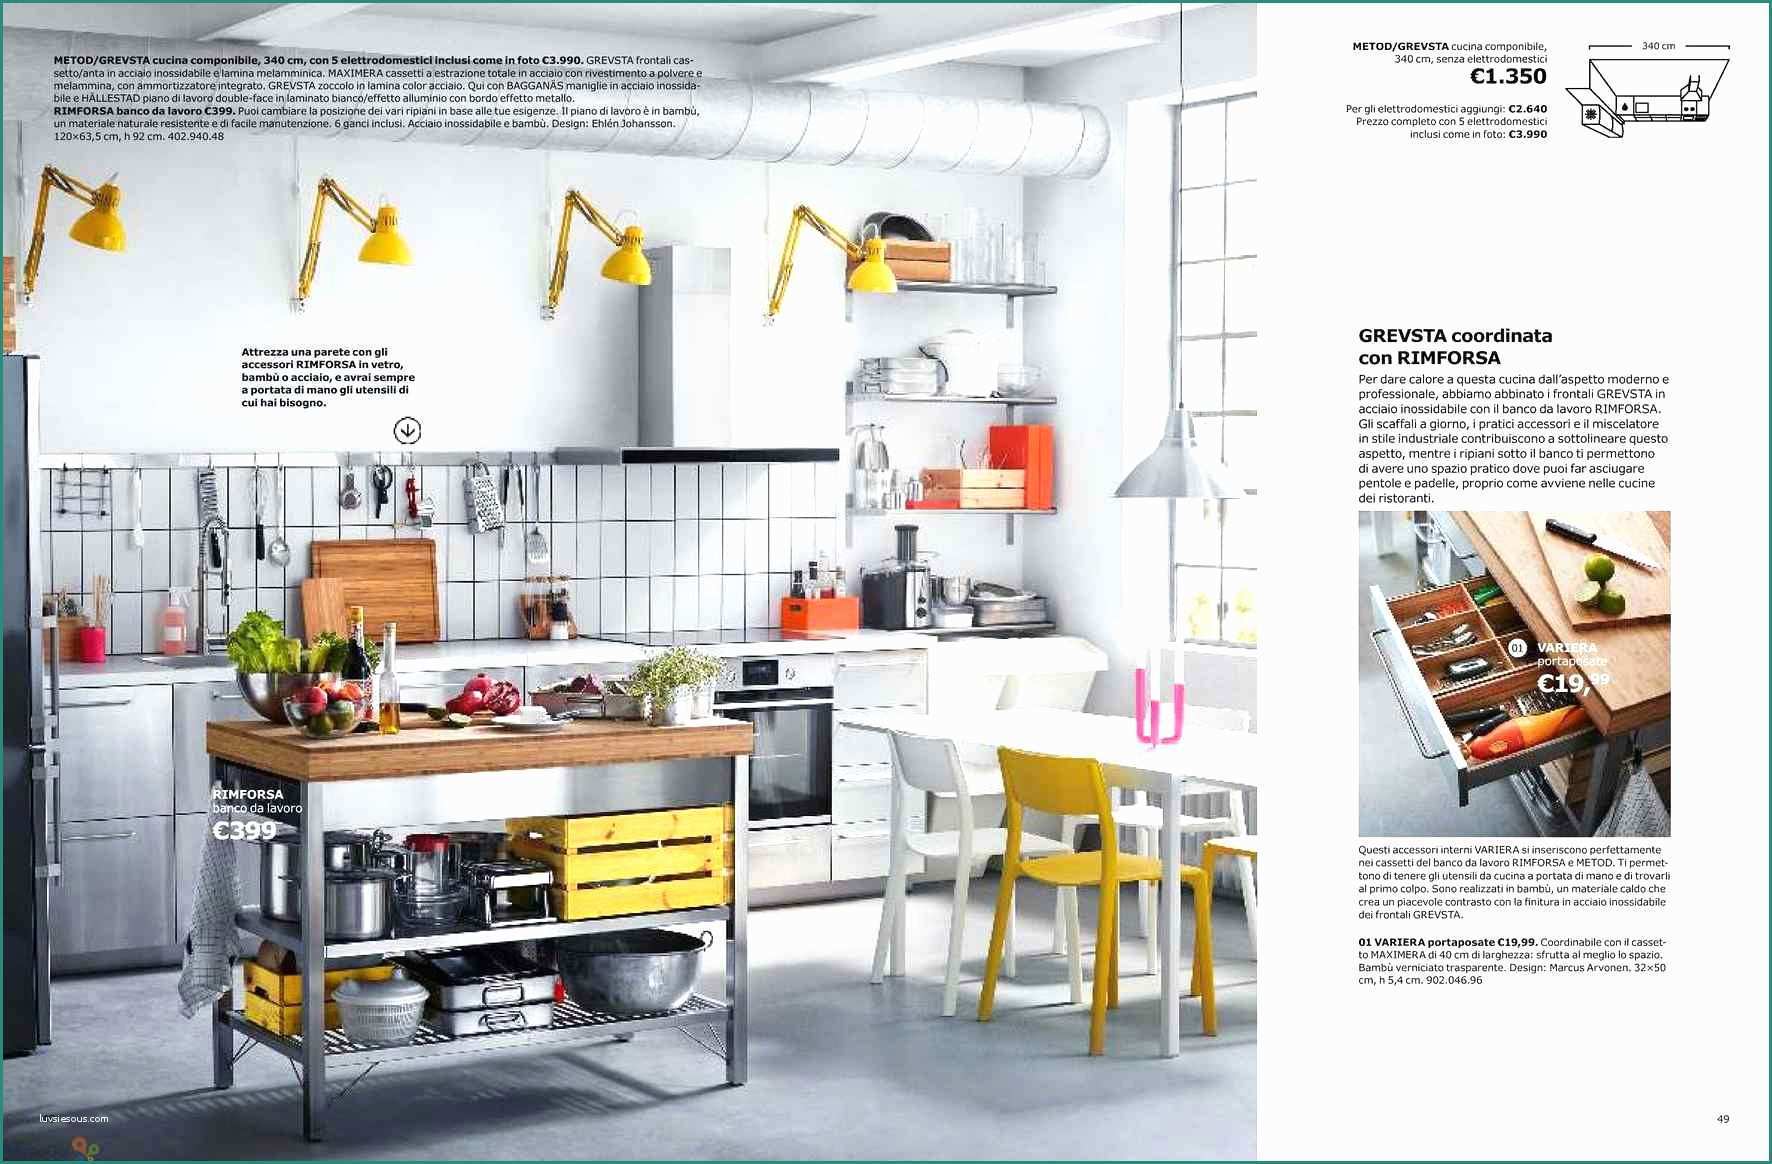 Mondo Convenienza Wikipedia E Bancone Da Cucina Beautiful Trasformare Uno Scaffale Ikea In Un